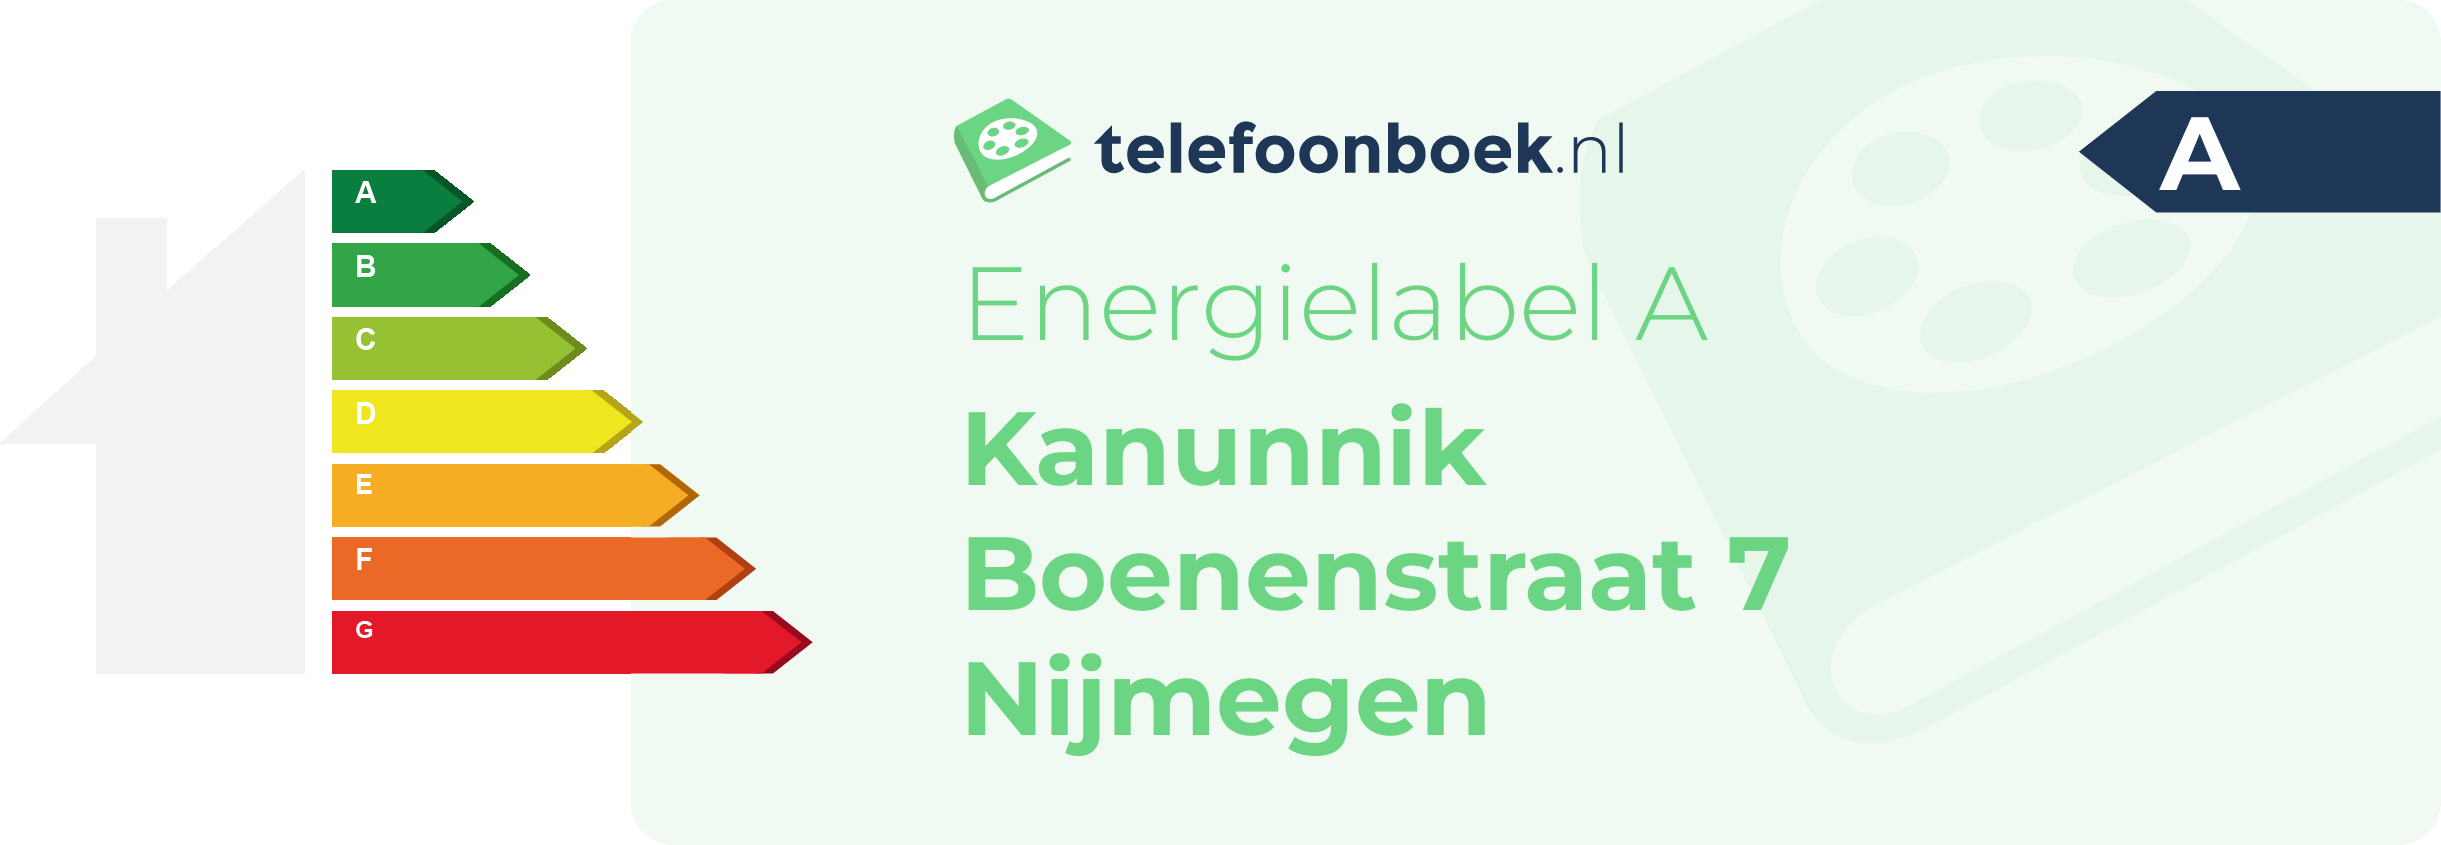 Energielabel Kanunnik Boenenstraat 7 Nijmegen